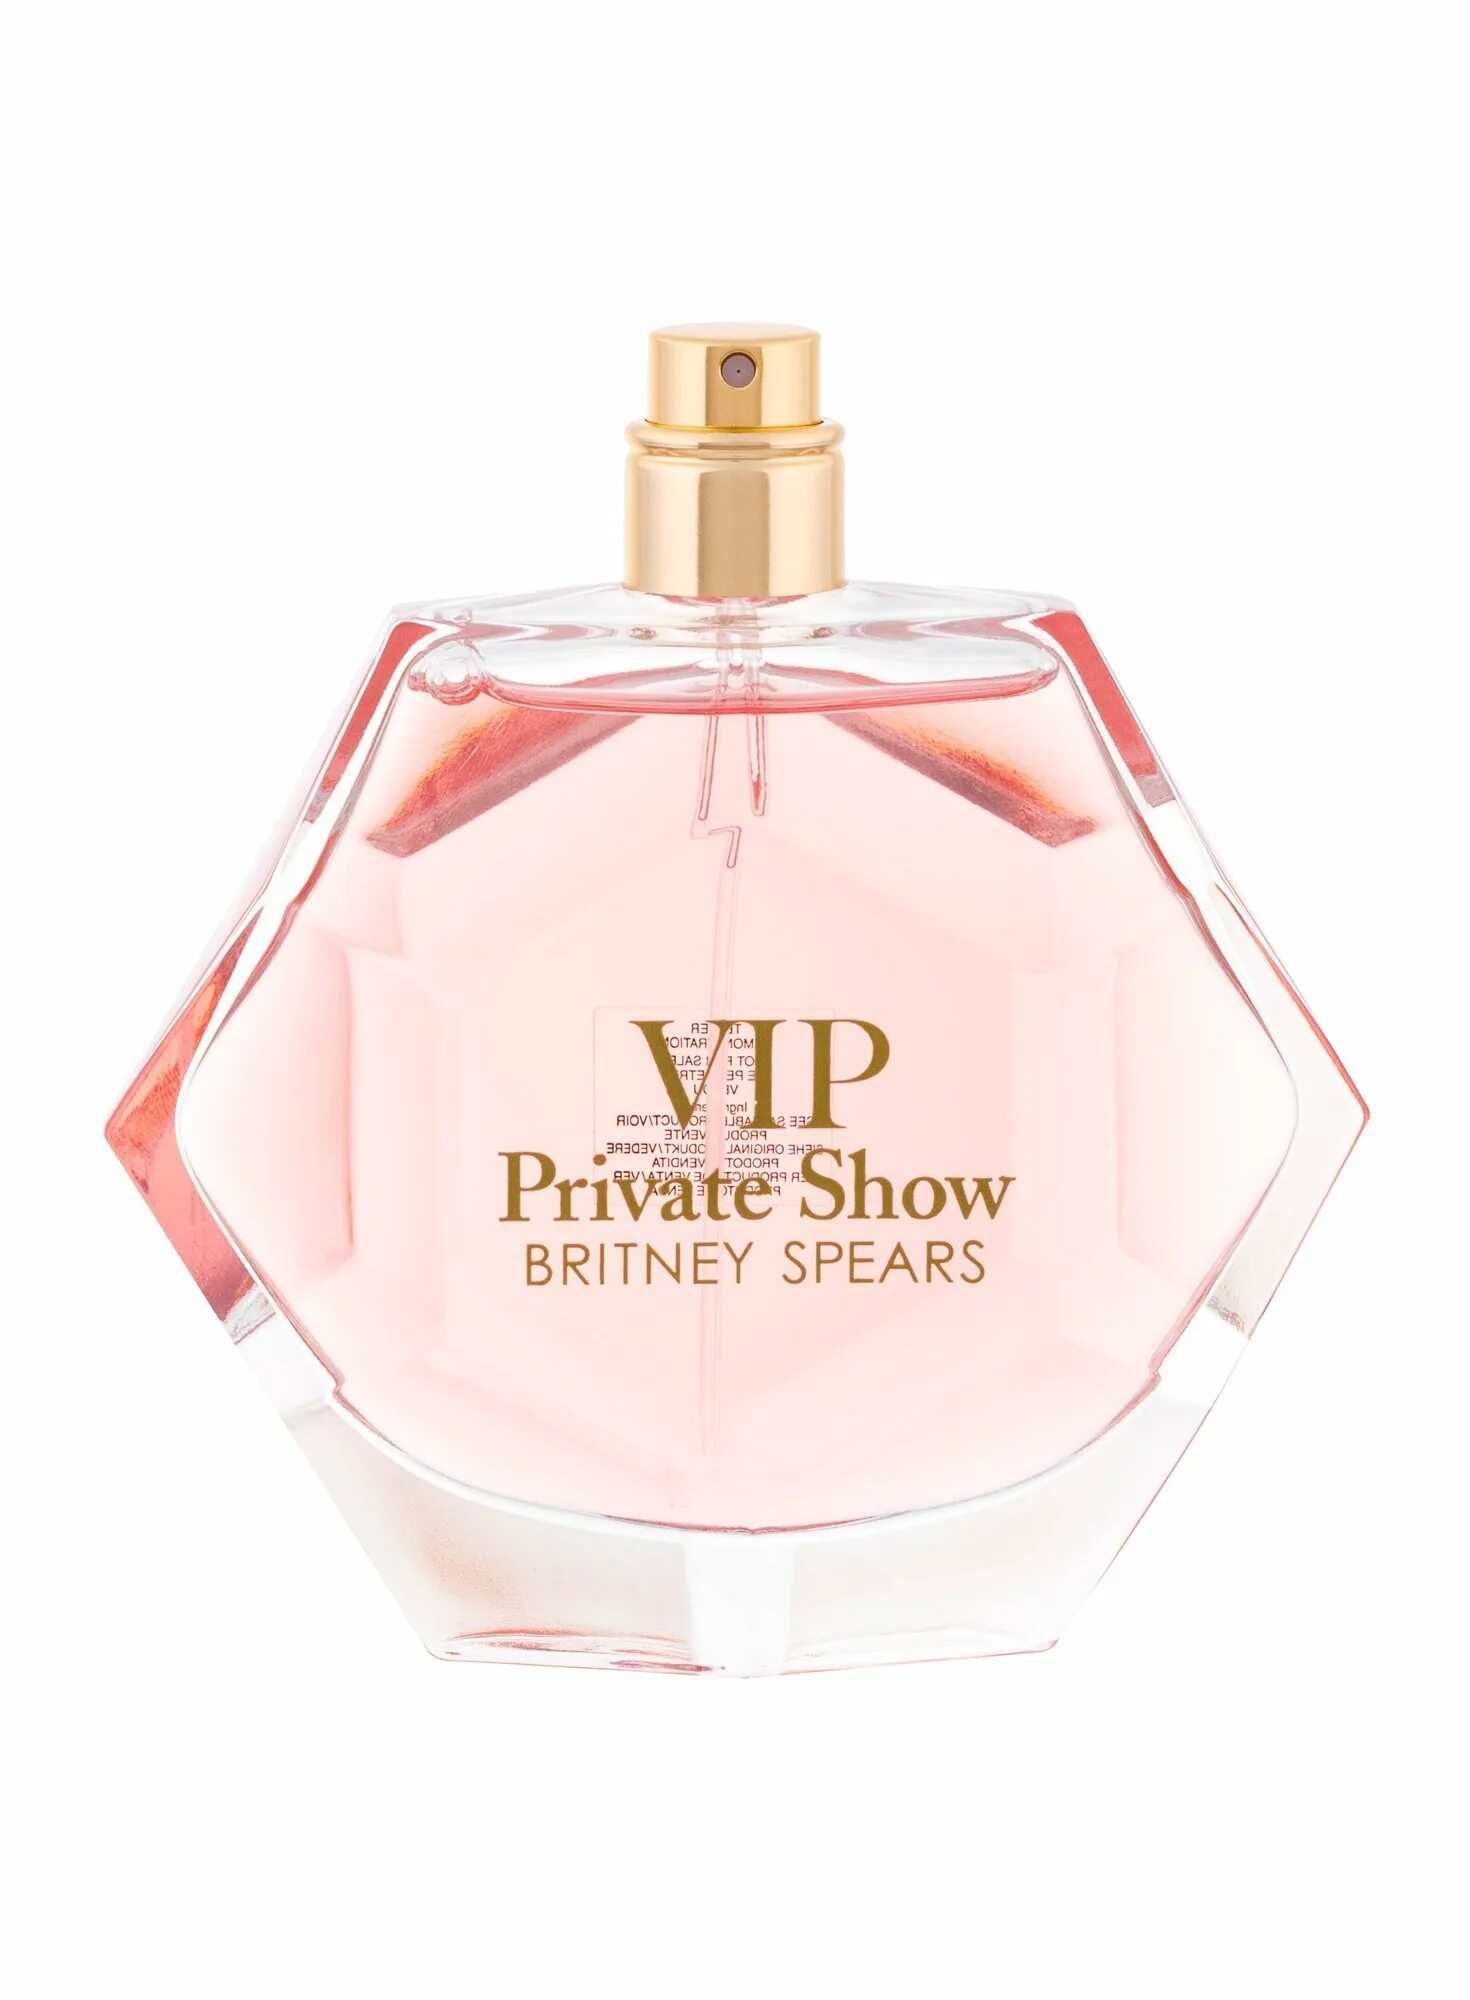 Духи Parfum show Britney. VIP духи для женщин. Духи вип персона 2012 женские. Купить парфюмерию от Britney Spears VIP private show. Show show духи